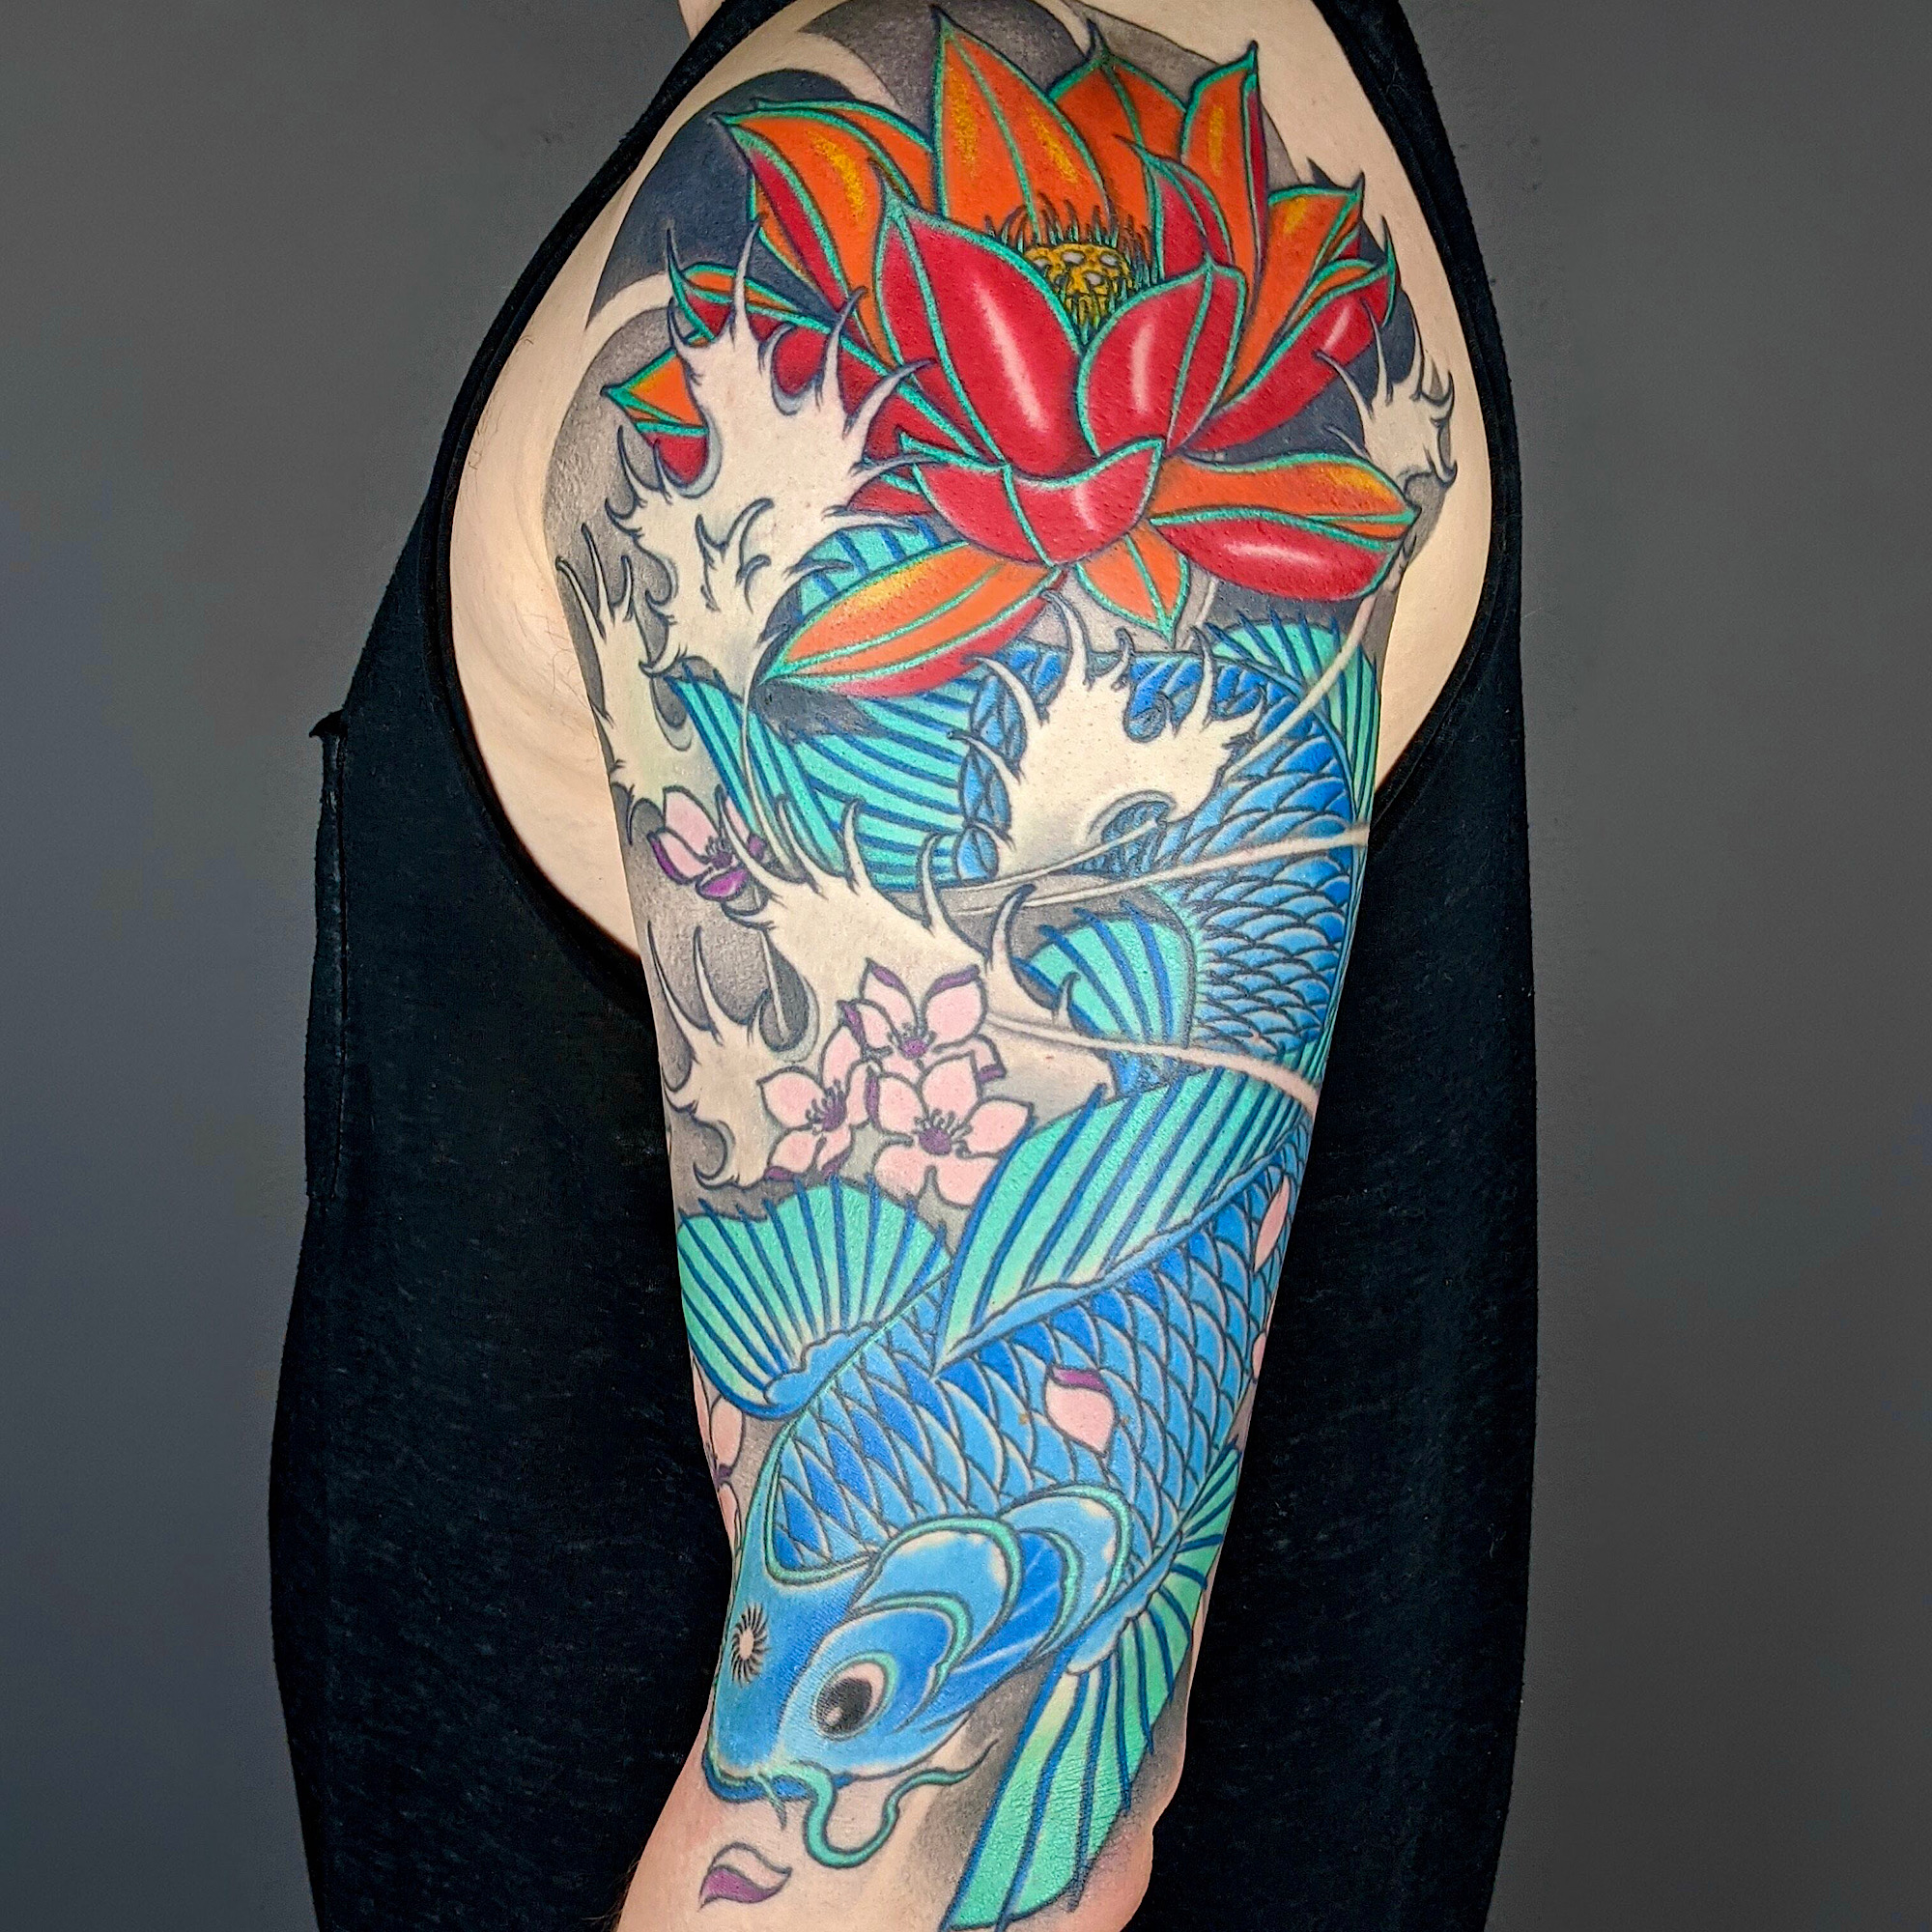 neo japanese irezumi tattoo koi carp fish lotus flower cherry blossoms water nishikigoi tattoo by Ricks custom tattooing Ricardo Pedro at Nexus Collective